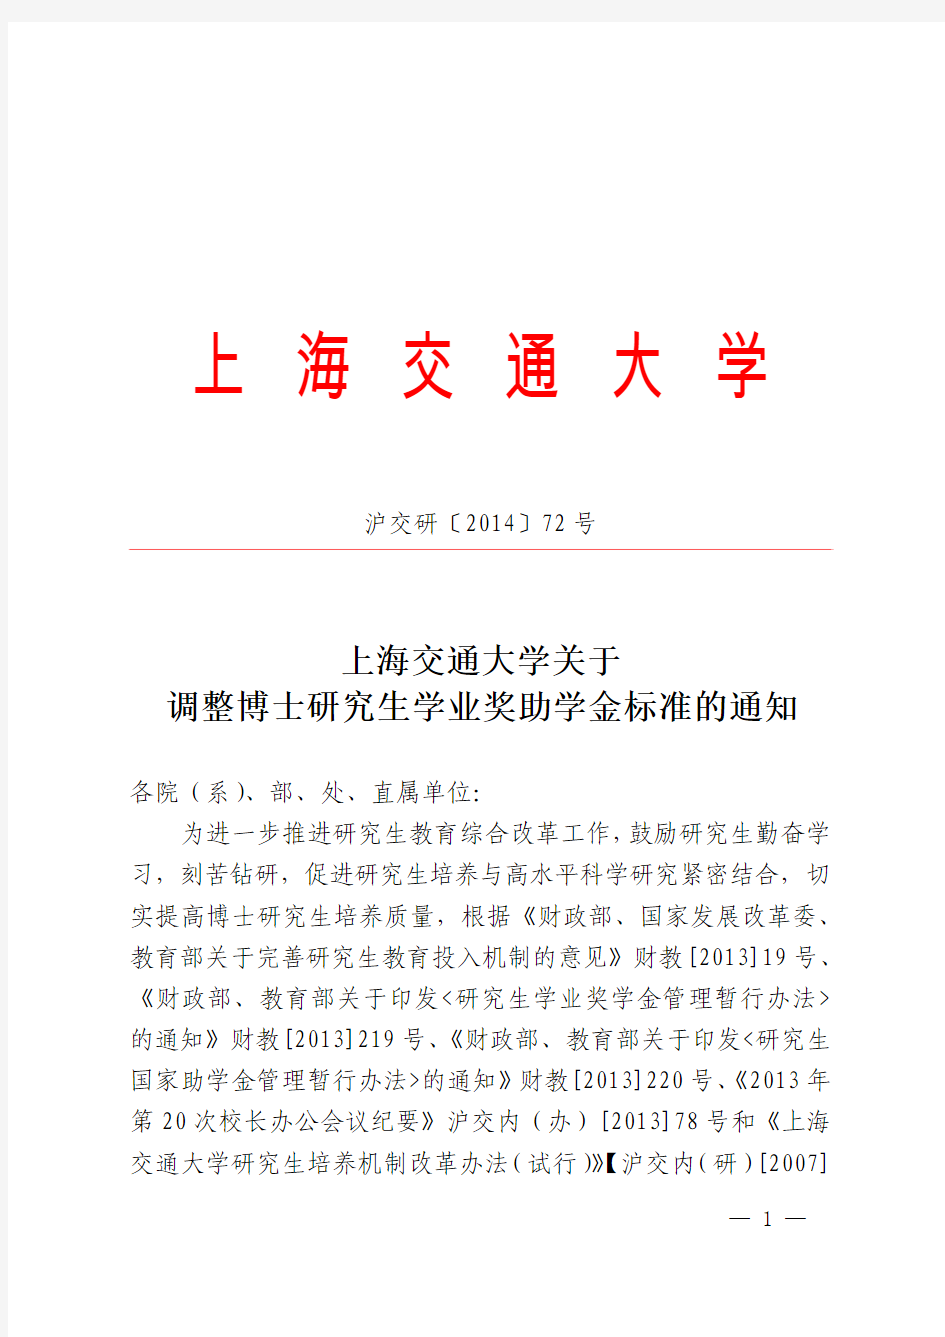 上海交通大学关于调整博士研究生学业奖助学金标准的通知